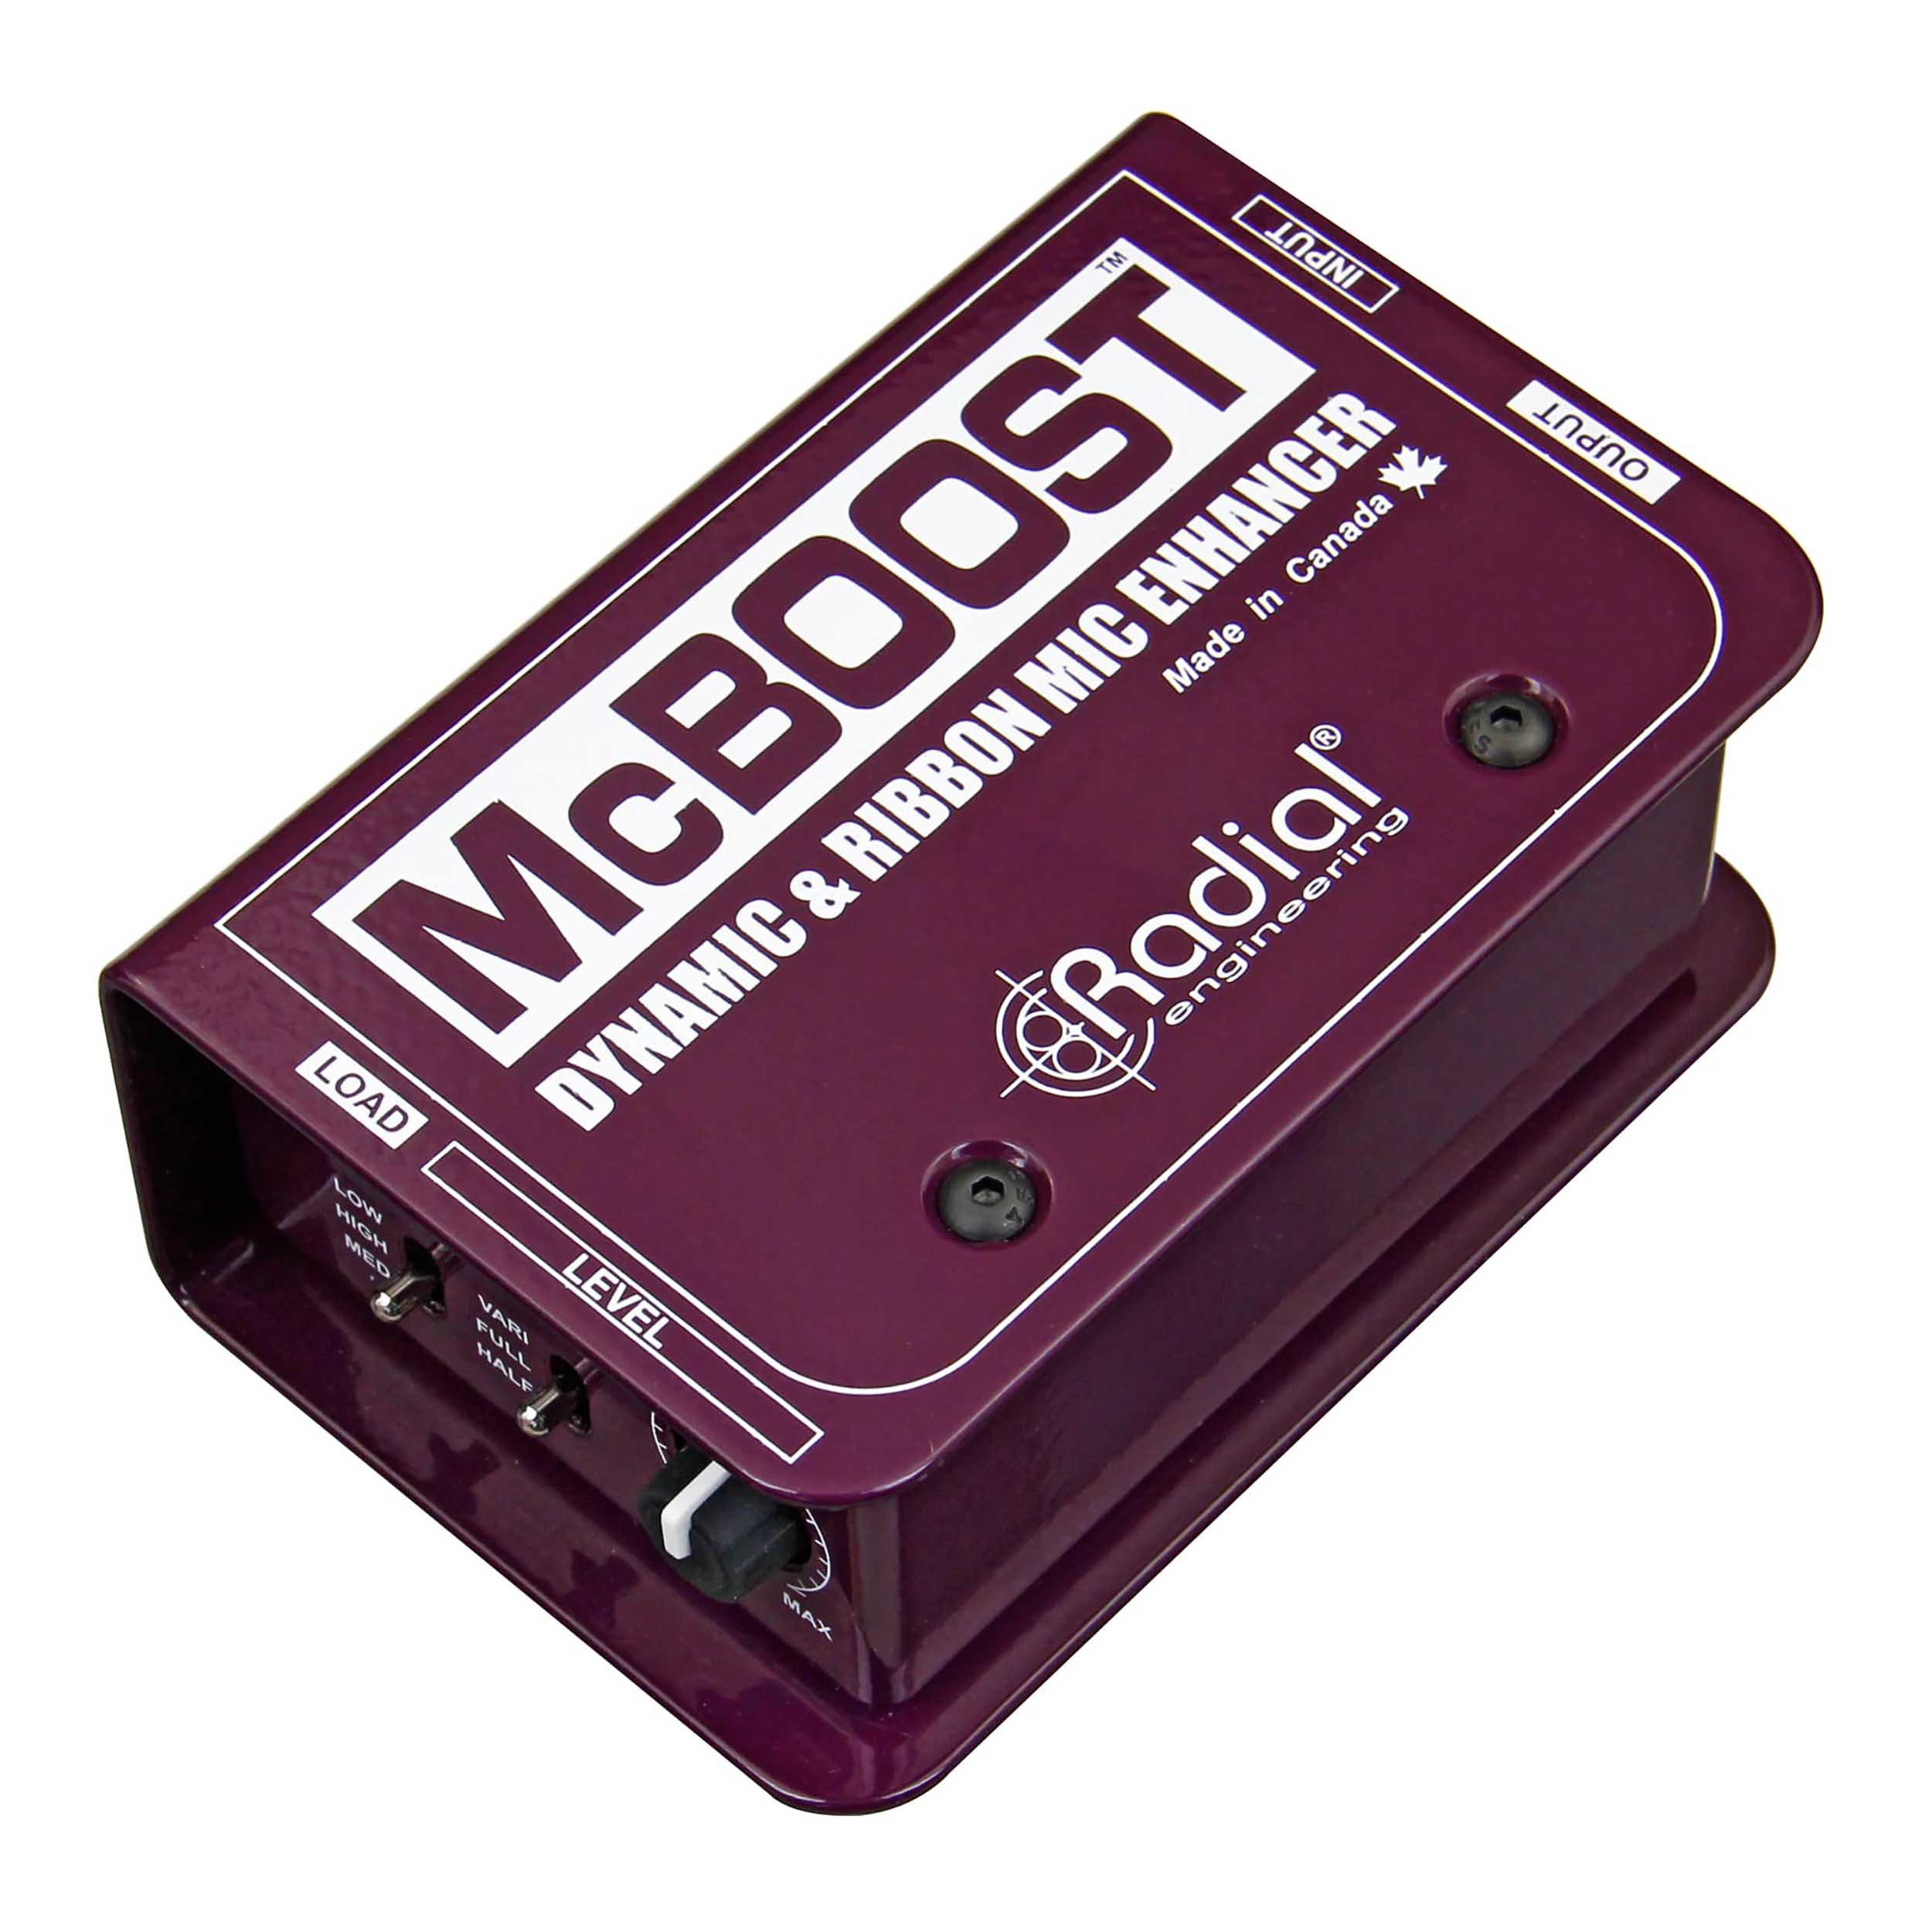 Radial Engineering McBoost Microphone Signal Intensifier by Radial Engineering